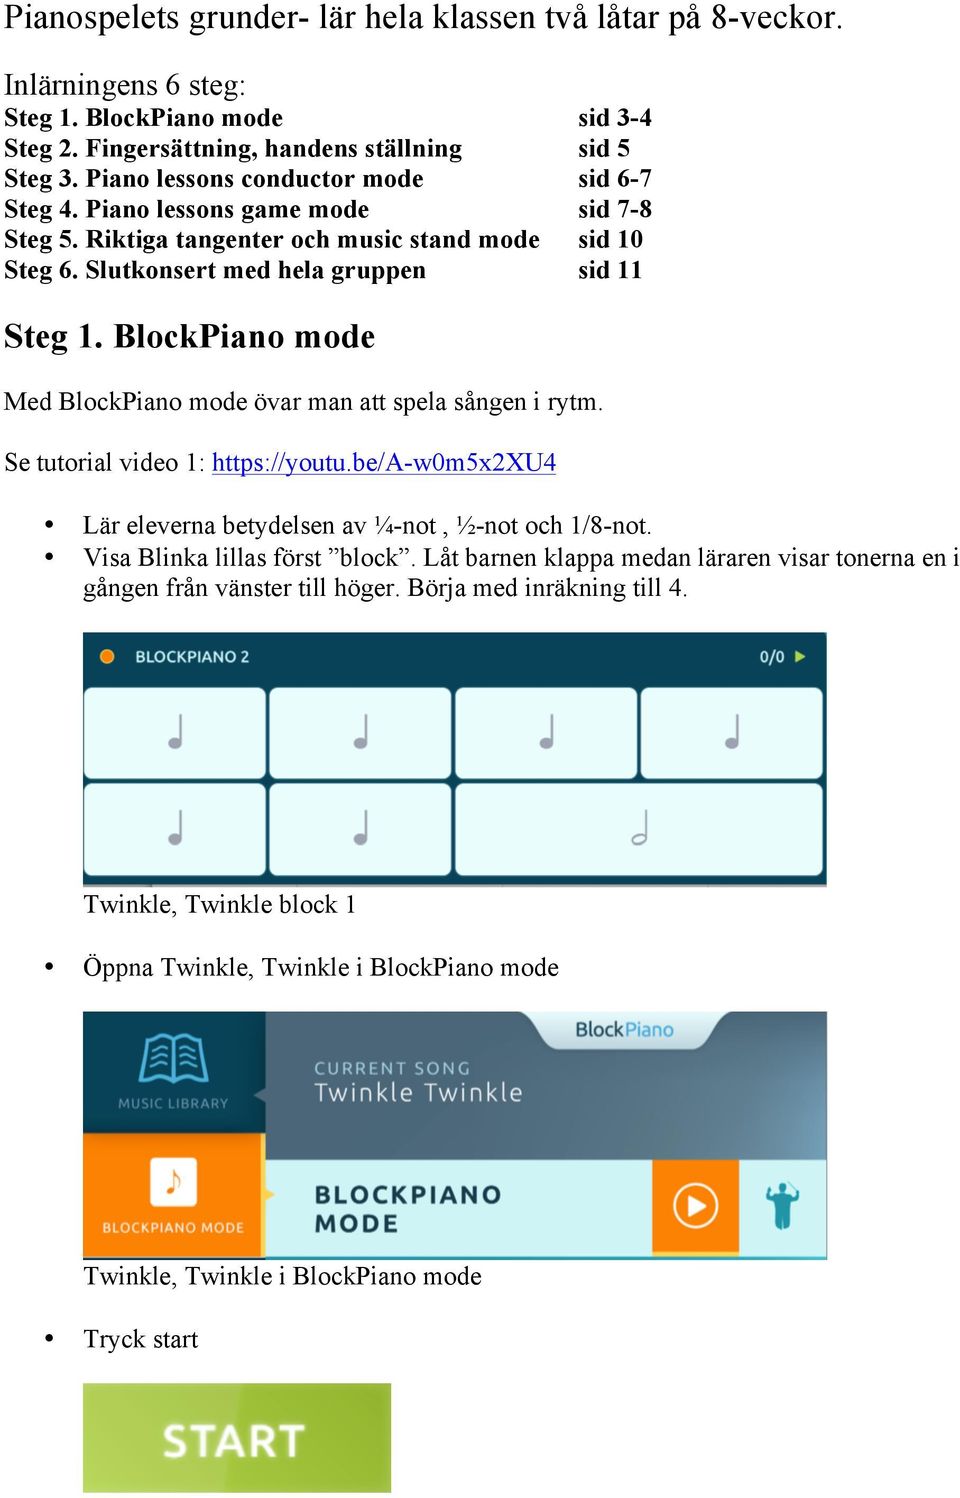 BlockPiano mode Med BlockPiano mode övar man att spela sången i rytm. Se tutorial video 1: https://youtu.be/a-w0m5x2xu4 Lär eleverna betydelsen av ¼-not, ½-not och 1/8-not.